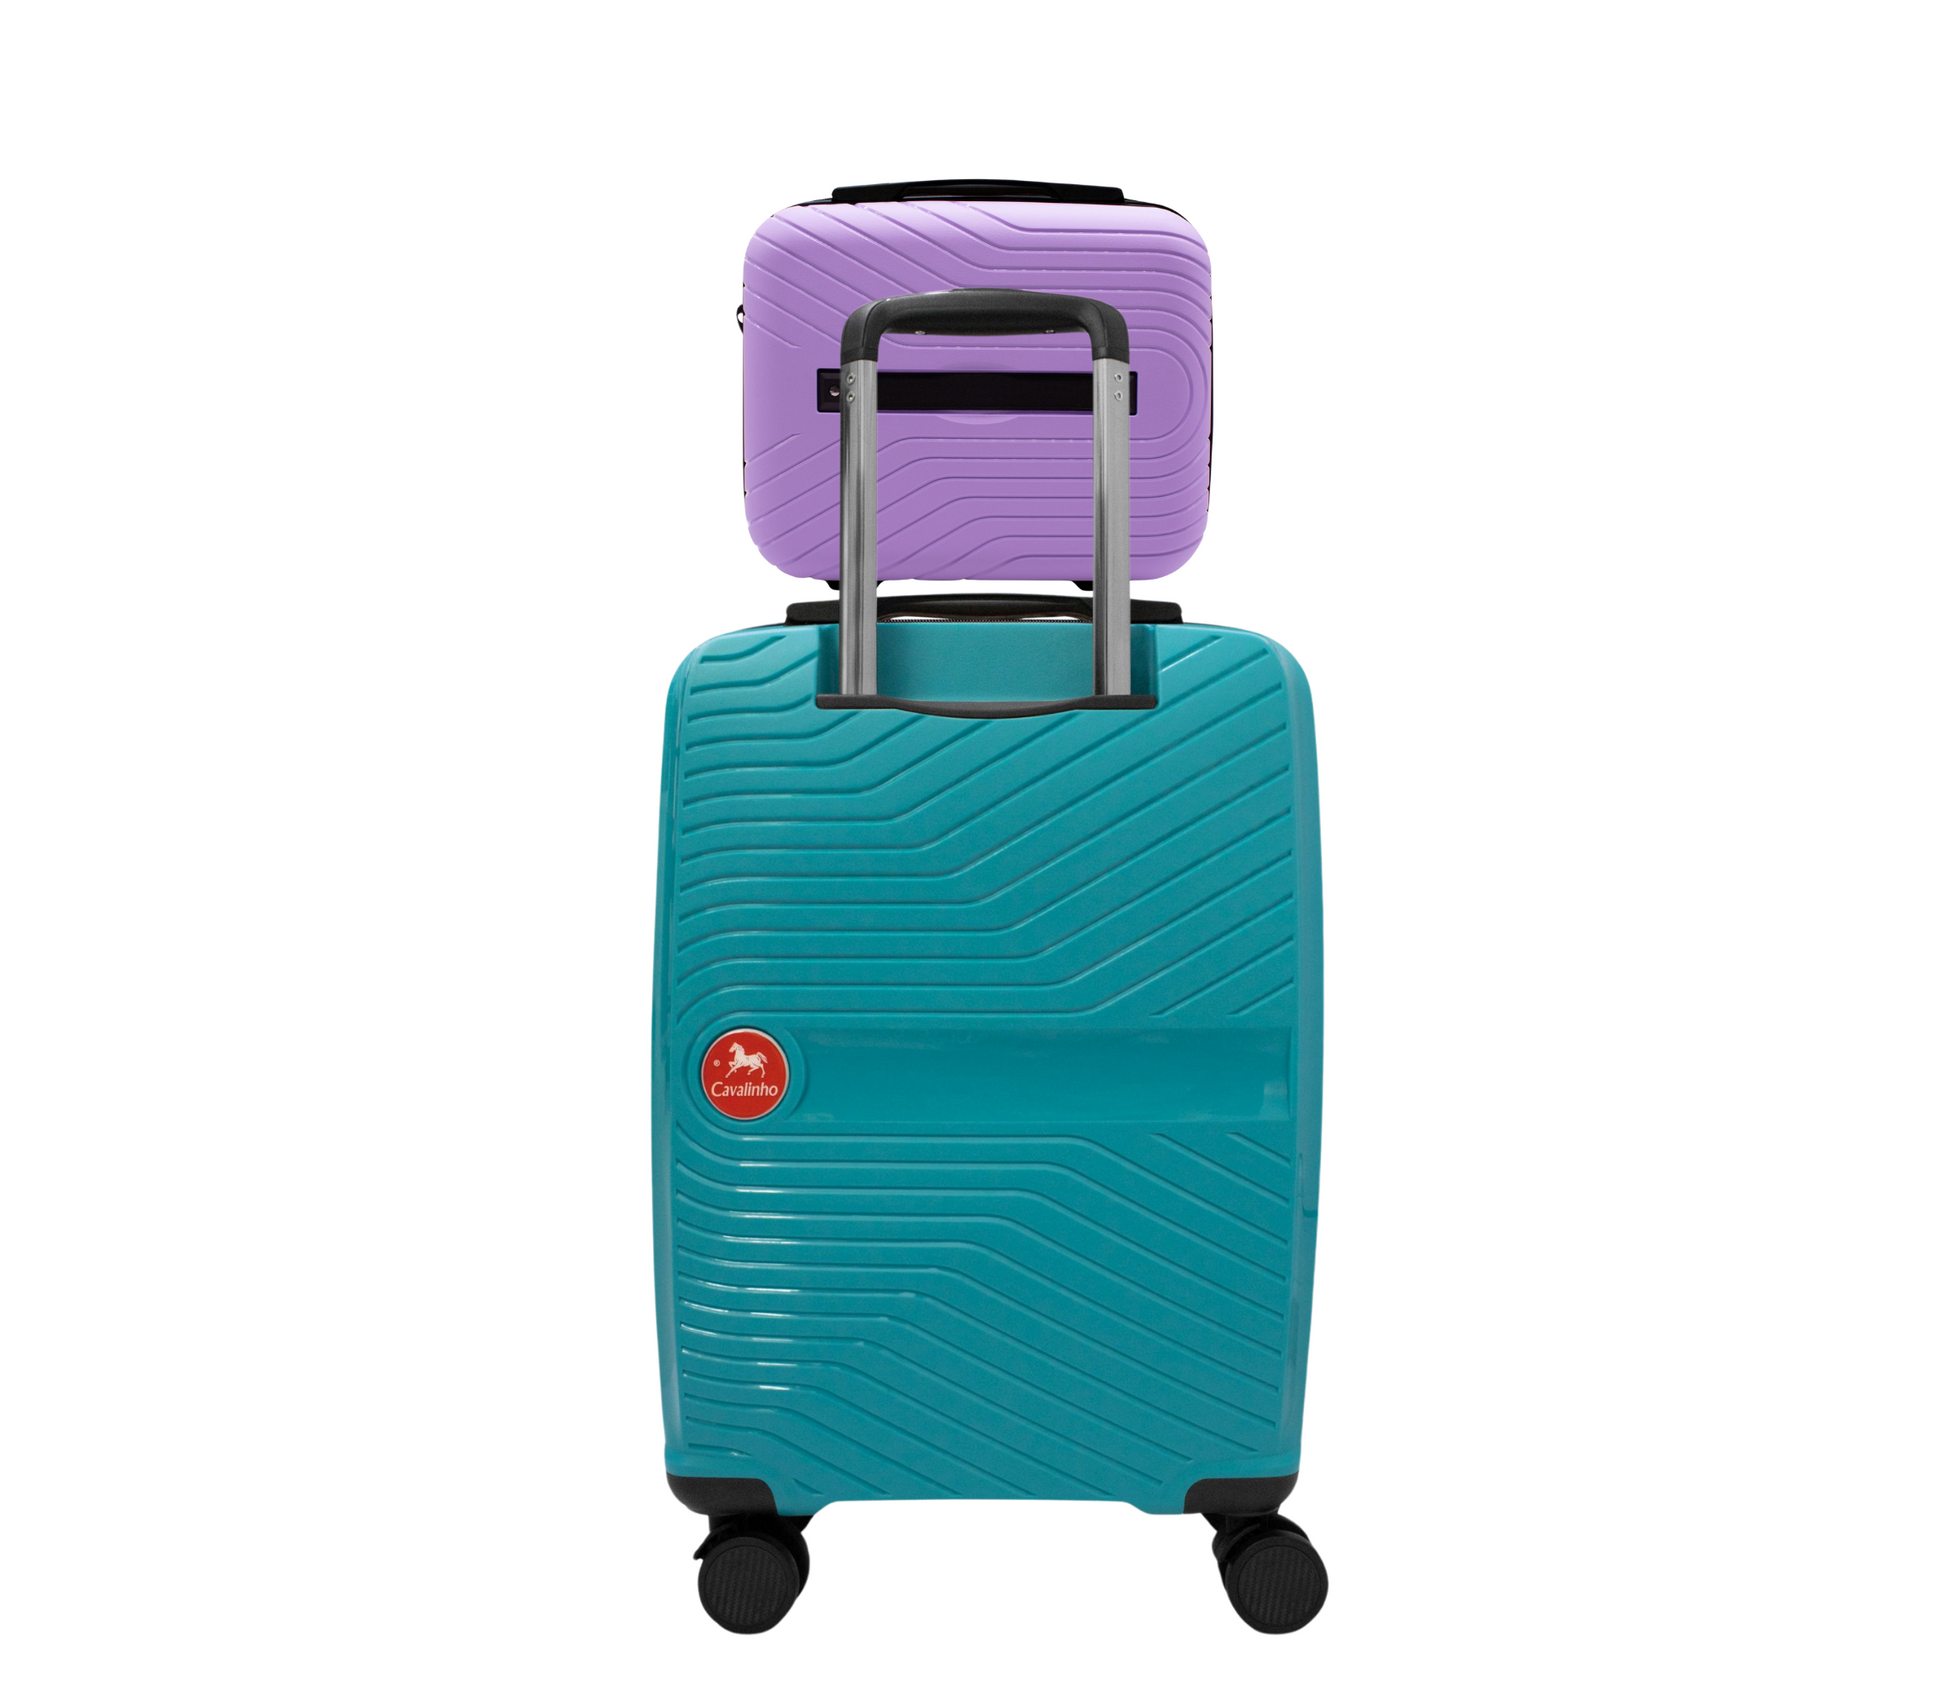 #color_ Lilac DarkTurquoise | Cavalinho Canada & USA Colorful 2 Piece Luggage Set (15" & 19") - Lilac DarkTurquoise - 68020004.3925.S1519._2